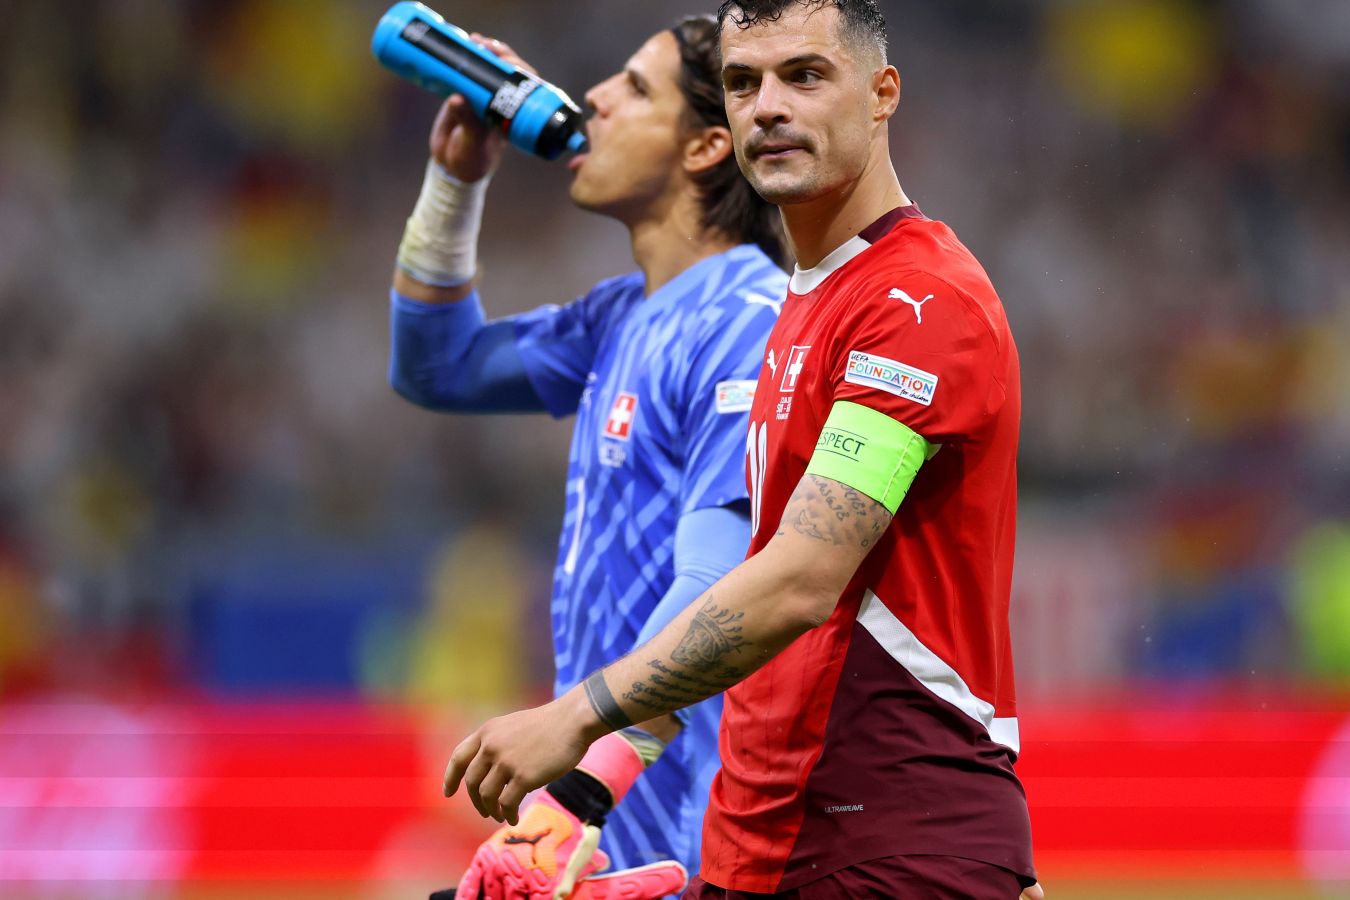 Полузащитник Швейцарии Джака получил травму и пройдёт МРТ перед матчем 1/4 финала Евро